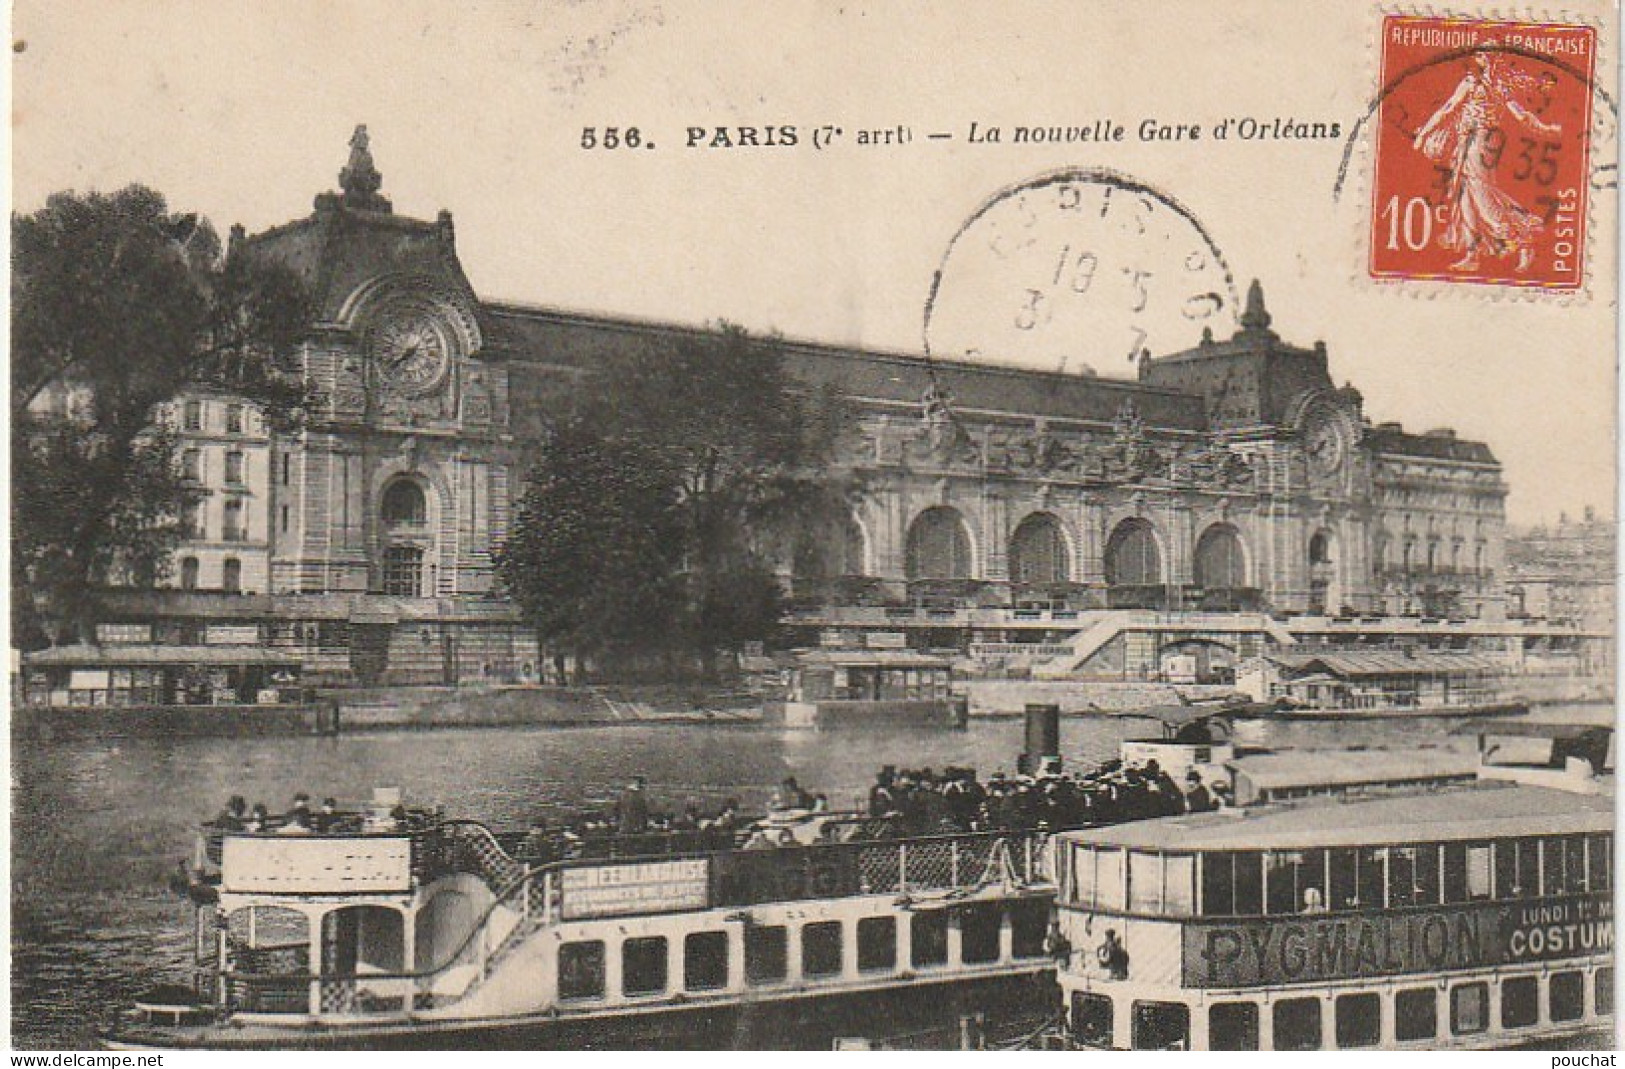 JA 4 - (75) PARIS - LA NOUVELLE GARE D' ORLEANS - BATEAUX PROMENADES - 2 SCANS - Pariser Métro, Bahnhöfe